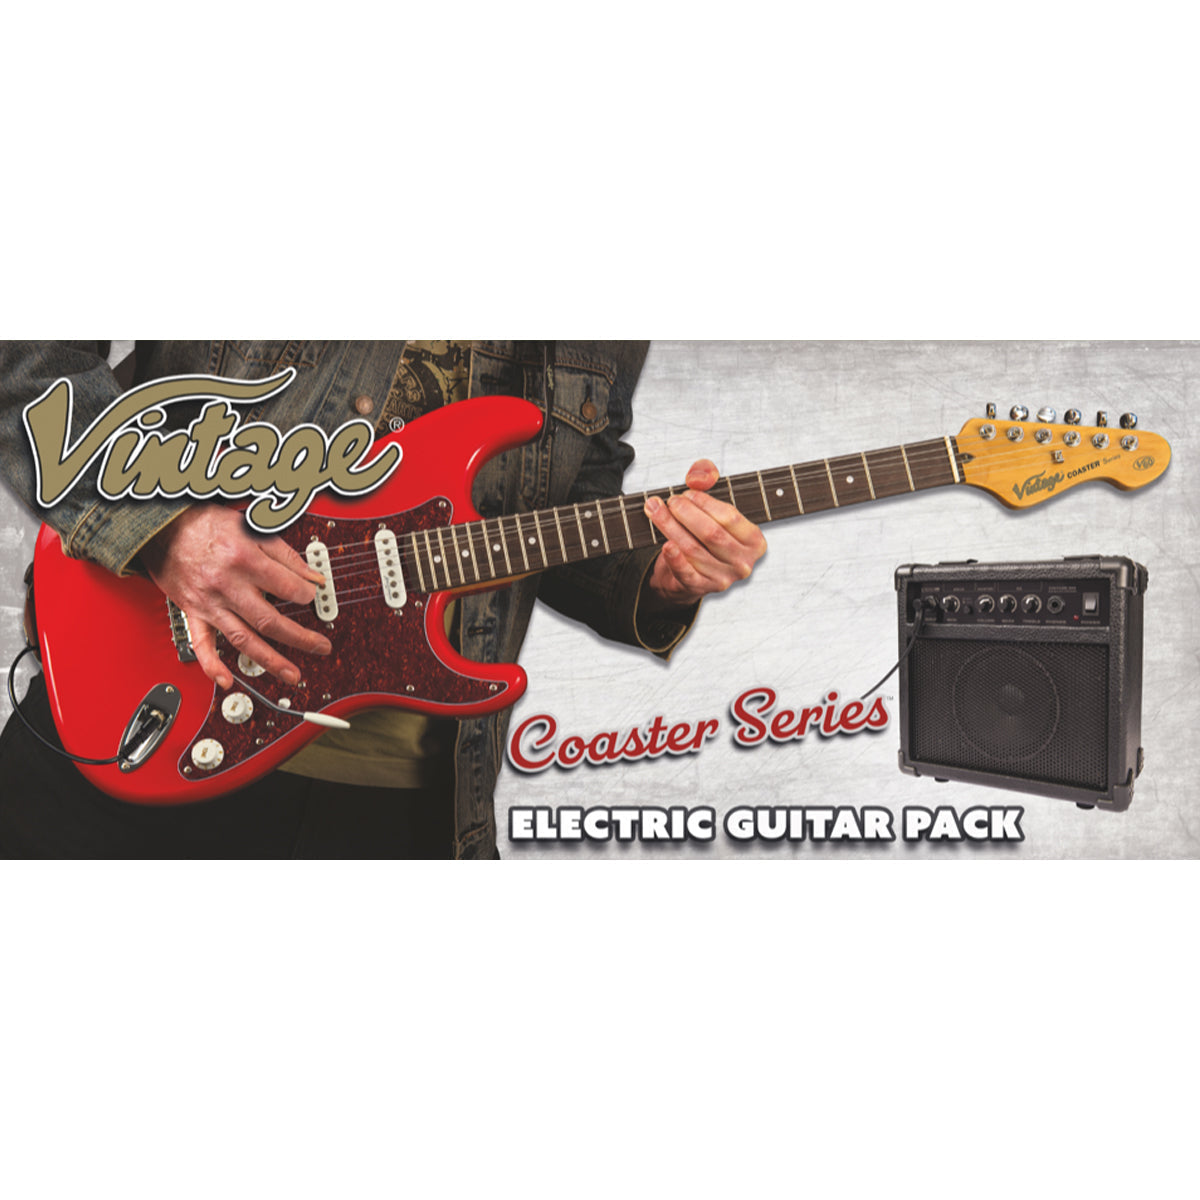 Vintage V60 Coaster Series Electric Guitar Pack ~ Boulevard Black, Electric Guitar for sale at Richards Guitars.